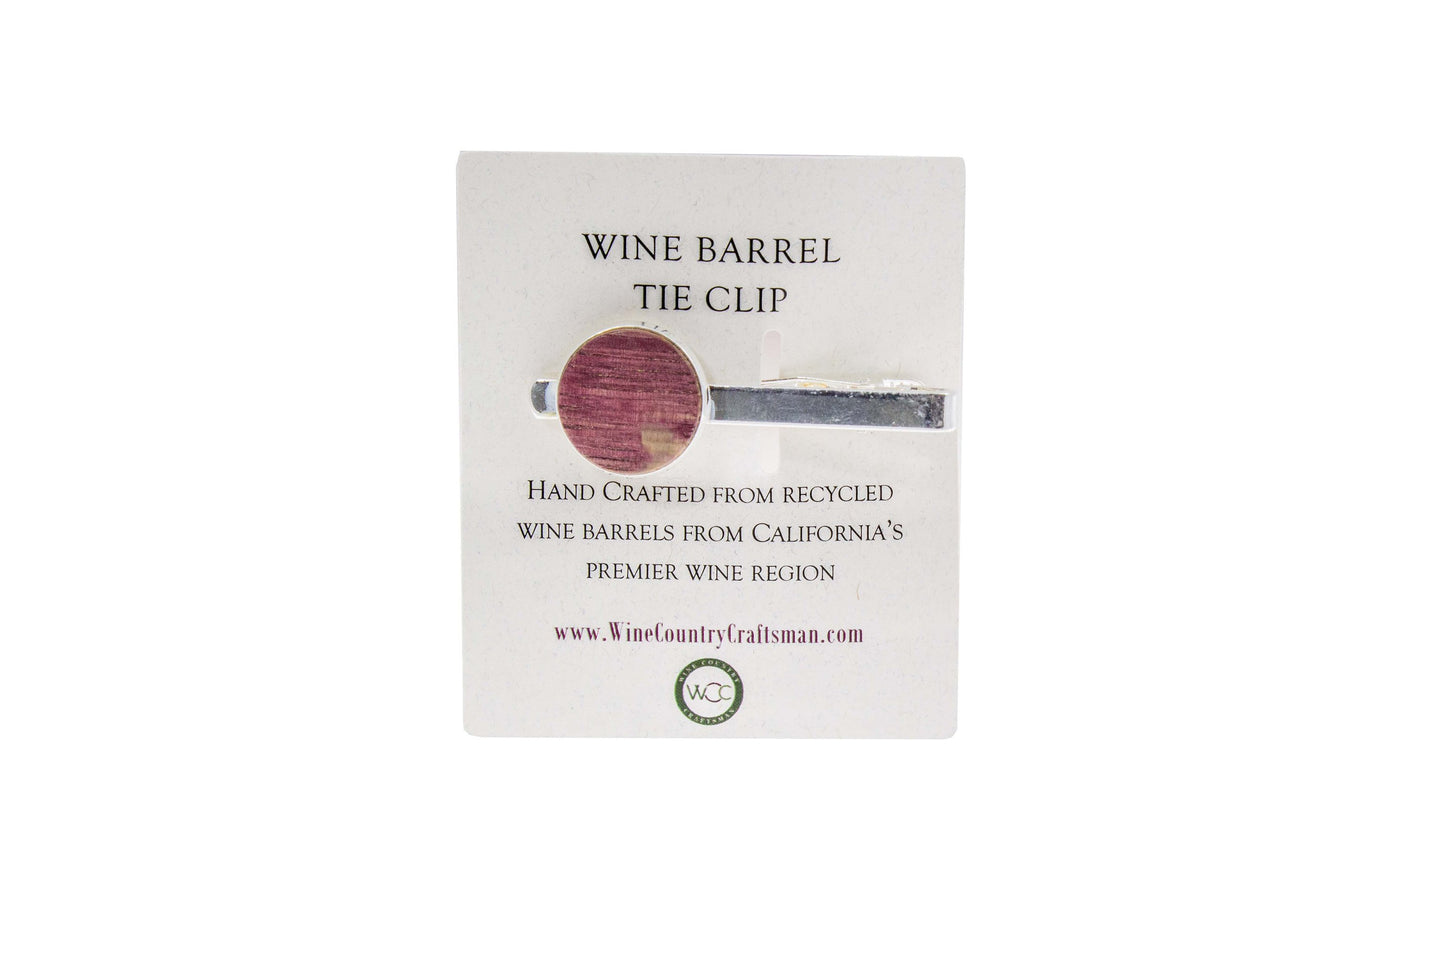 Wine Barrel Tie Clip - Cordially 